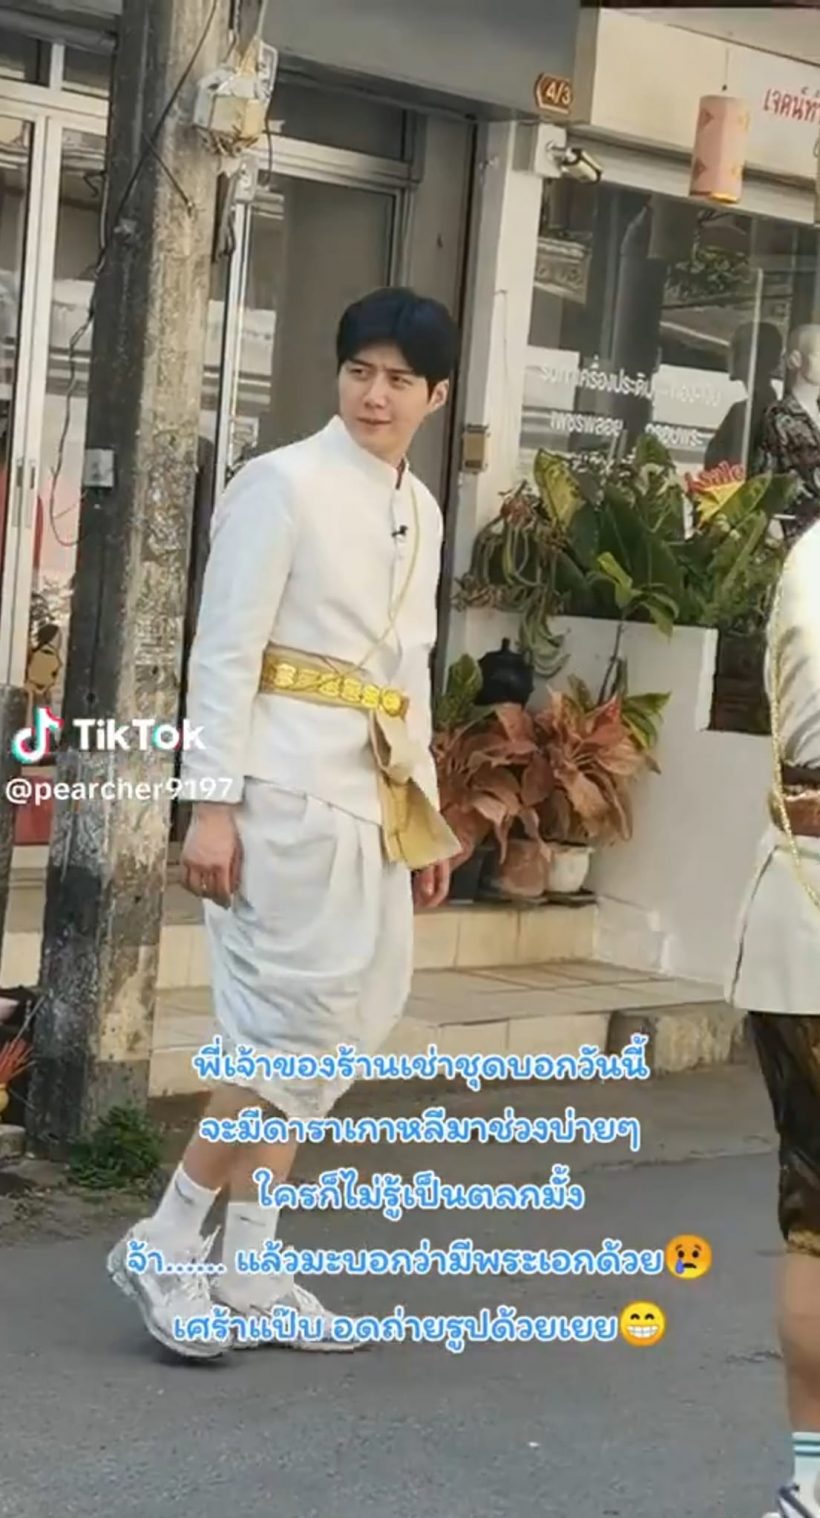 เอ็นดู คิมซอนโฮ แต่งชุดไทย ถ่ายวาไรตี้ที่เชียงใหม่ พี่หมื่นหล่อมาก